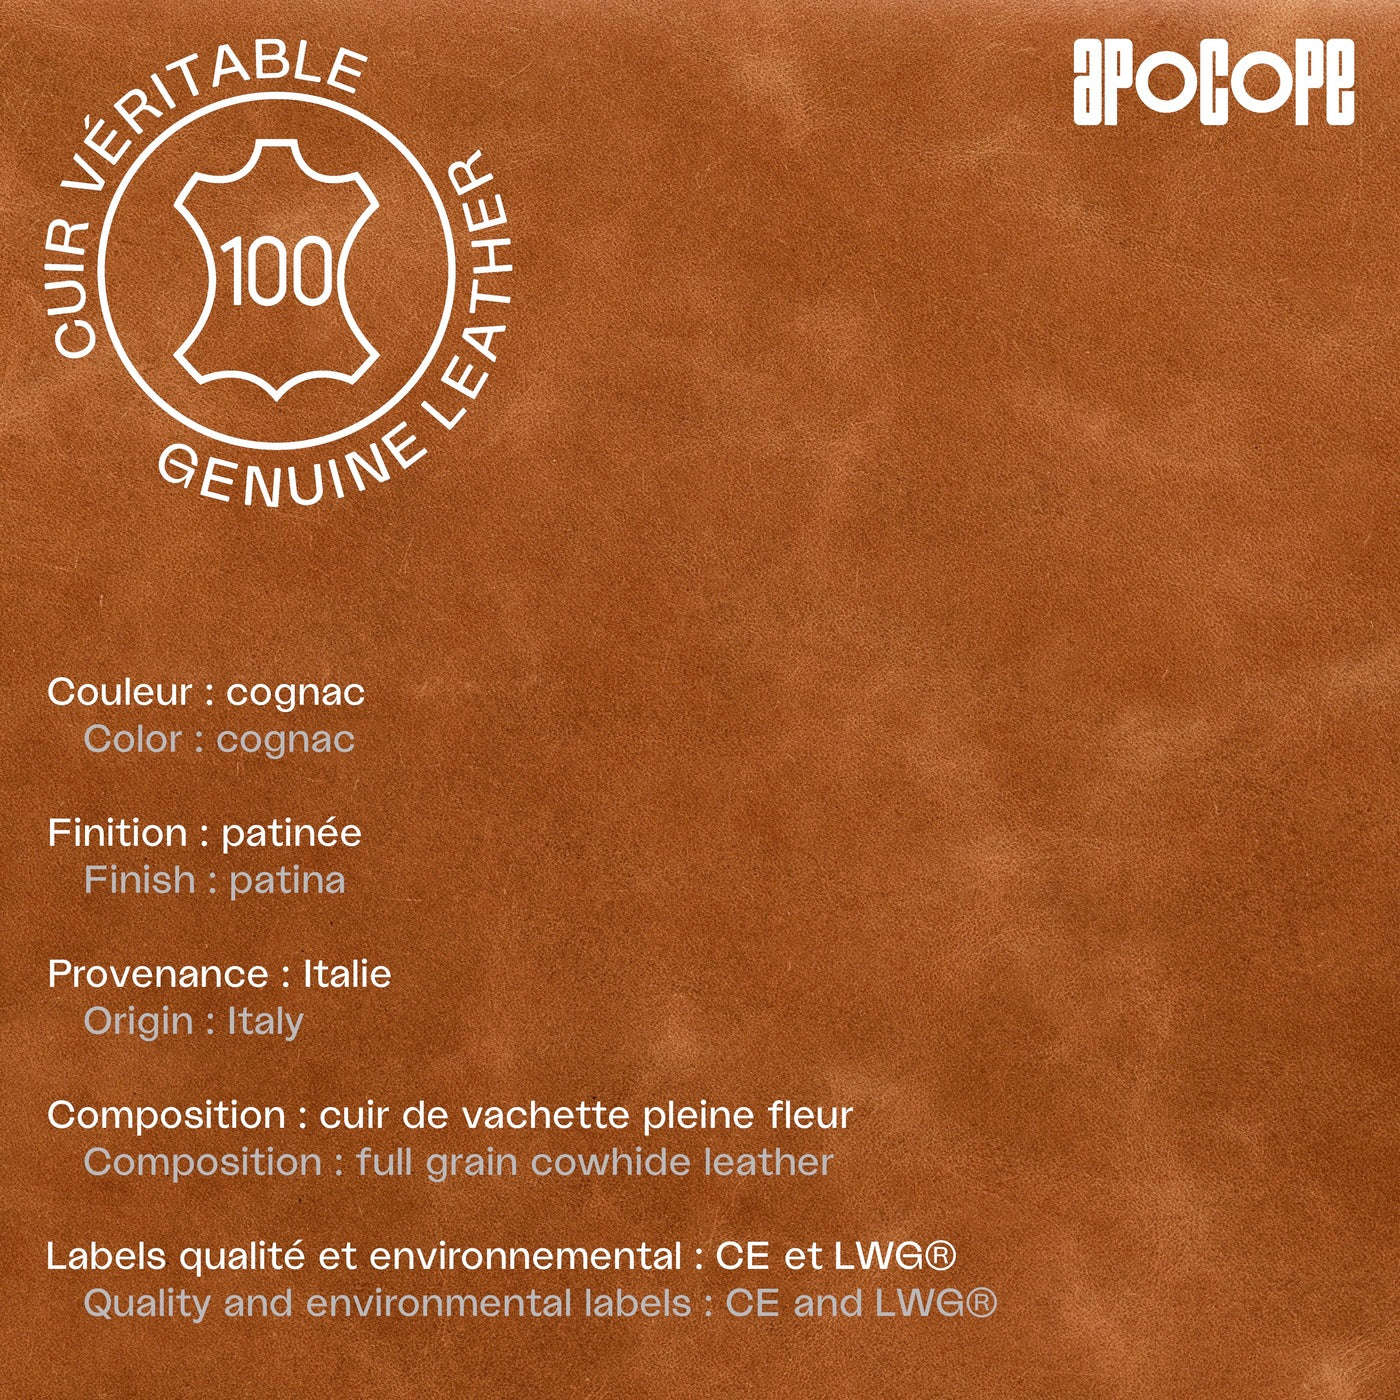 FAB - Porte-passeport en cuir patiné - Cognac